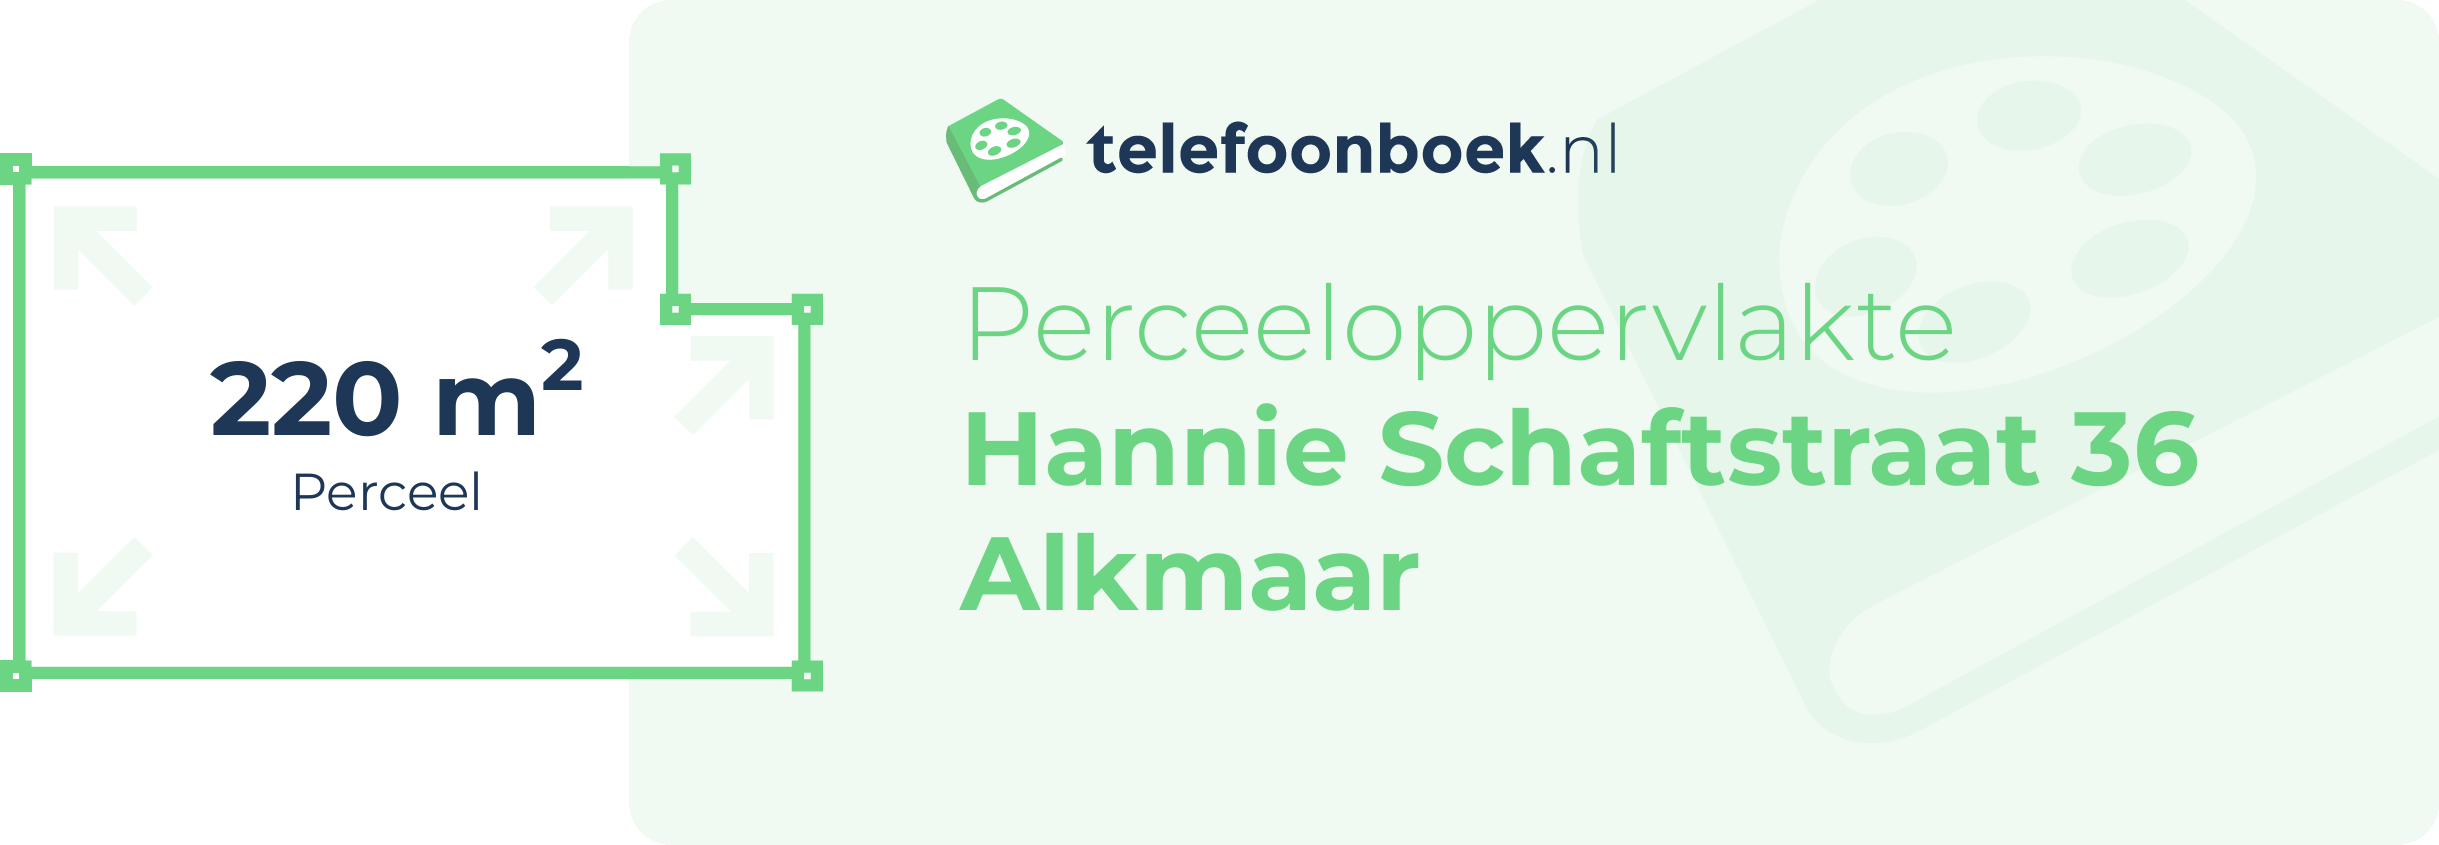 Perceeloppervlakte Hannie Schaftstraat 36 Alkmaar